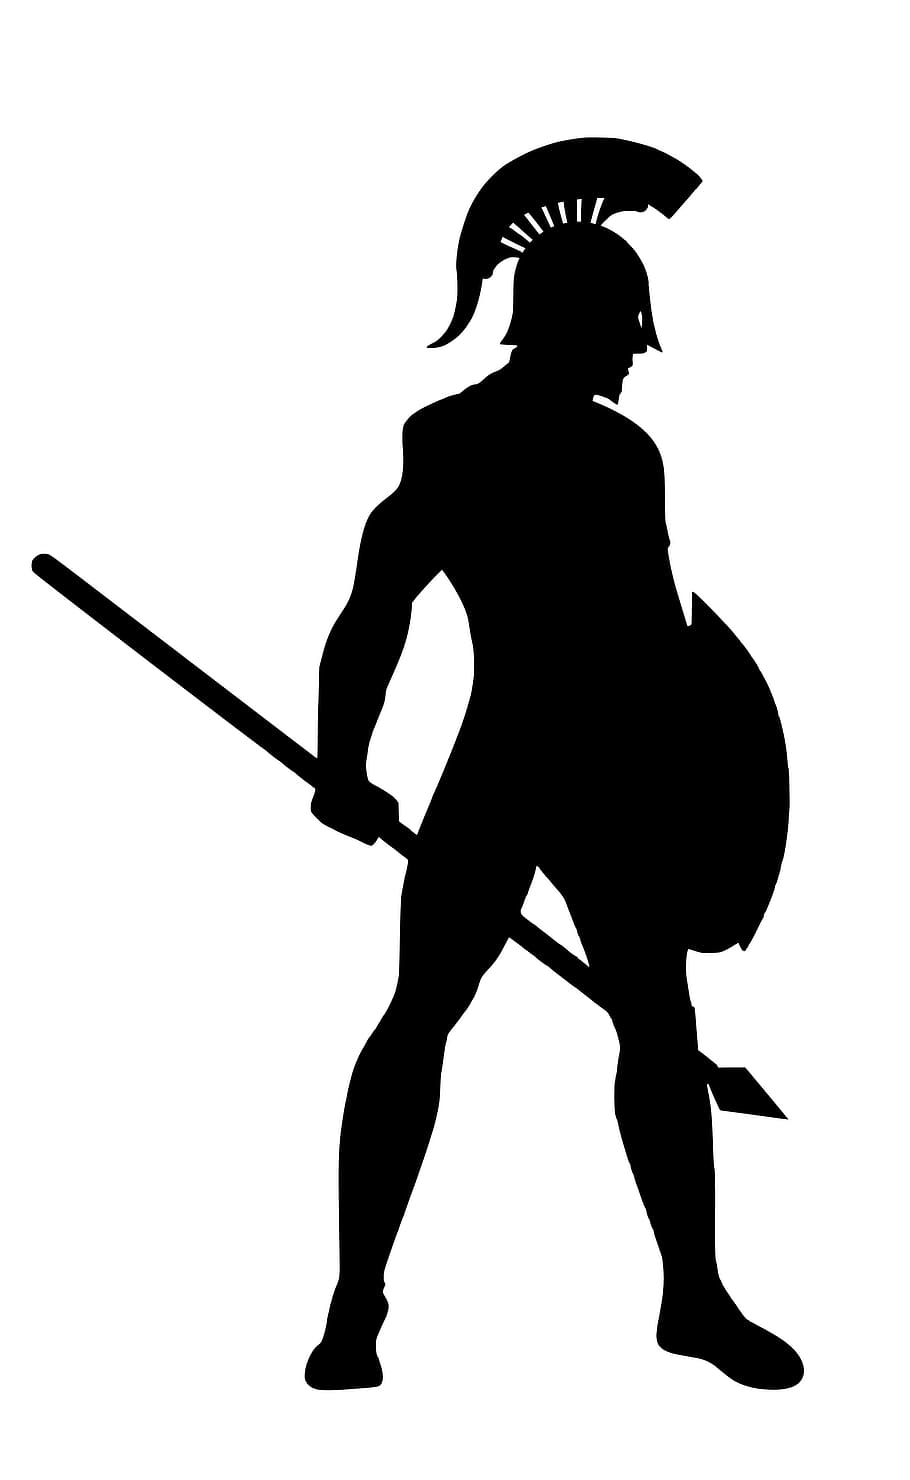 ilustração, espartano, silhueta, exército, romano, soldado, escudo, herói, capacete, lutador